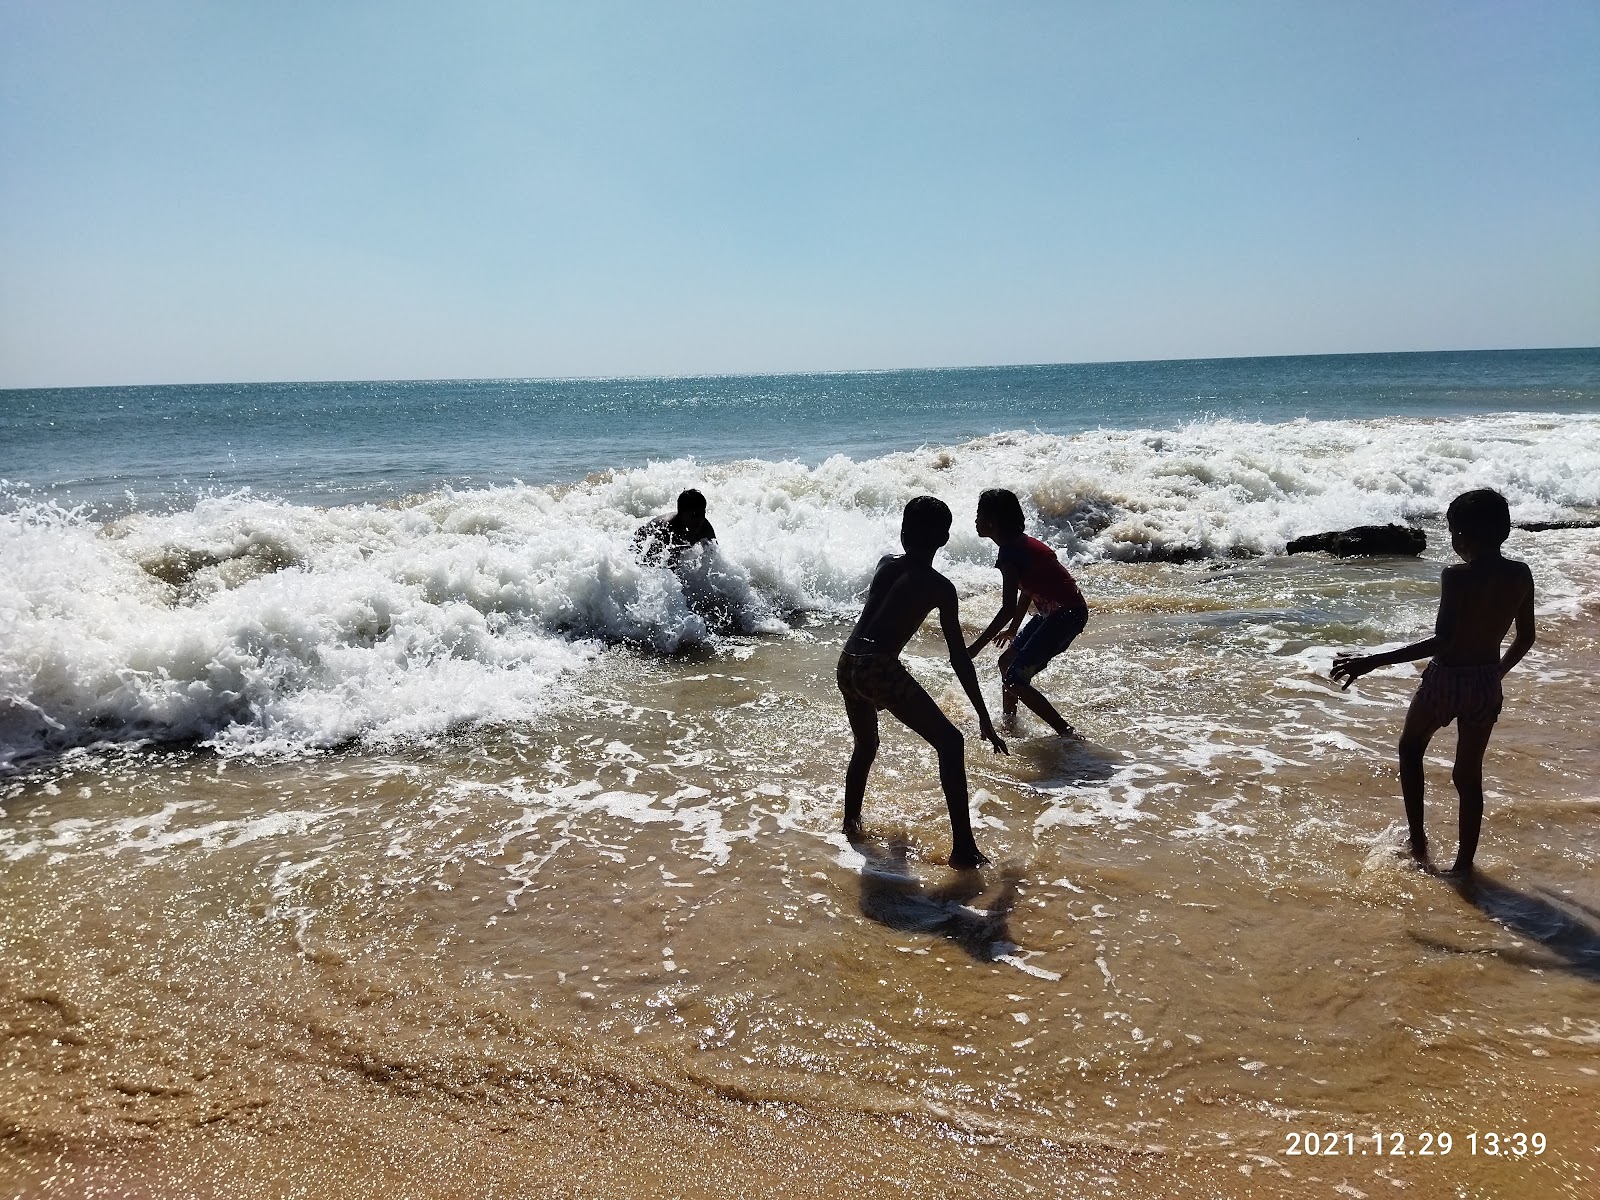 Dwarakapathi Beach'in fotoğrafı geniş plaj ile birlikte